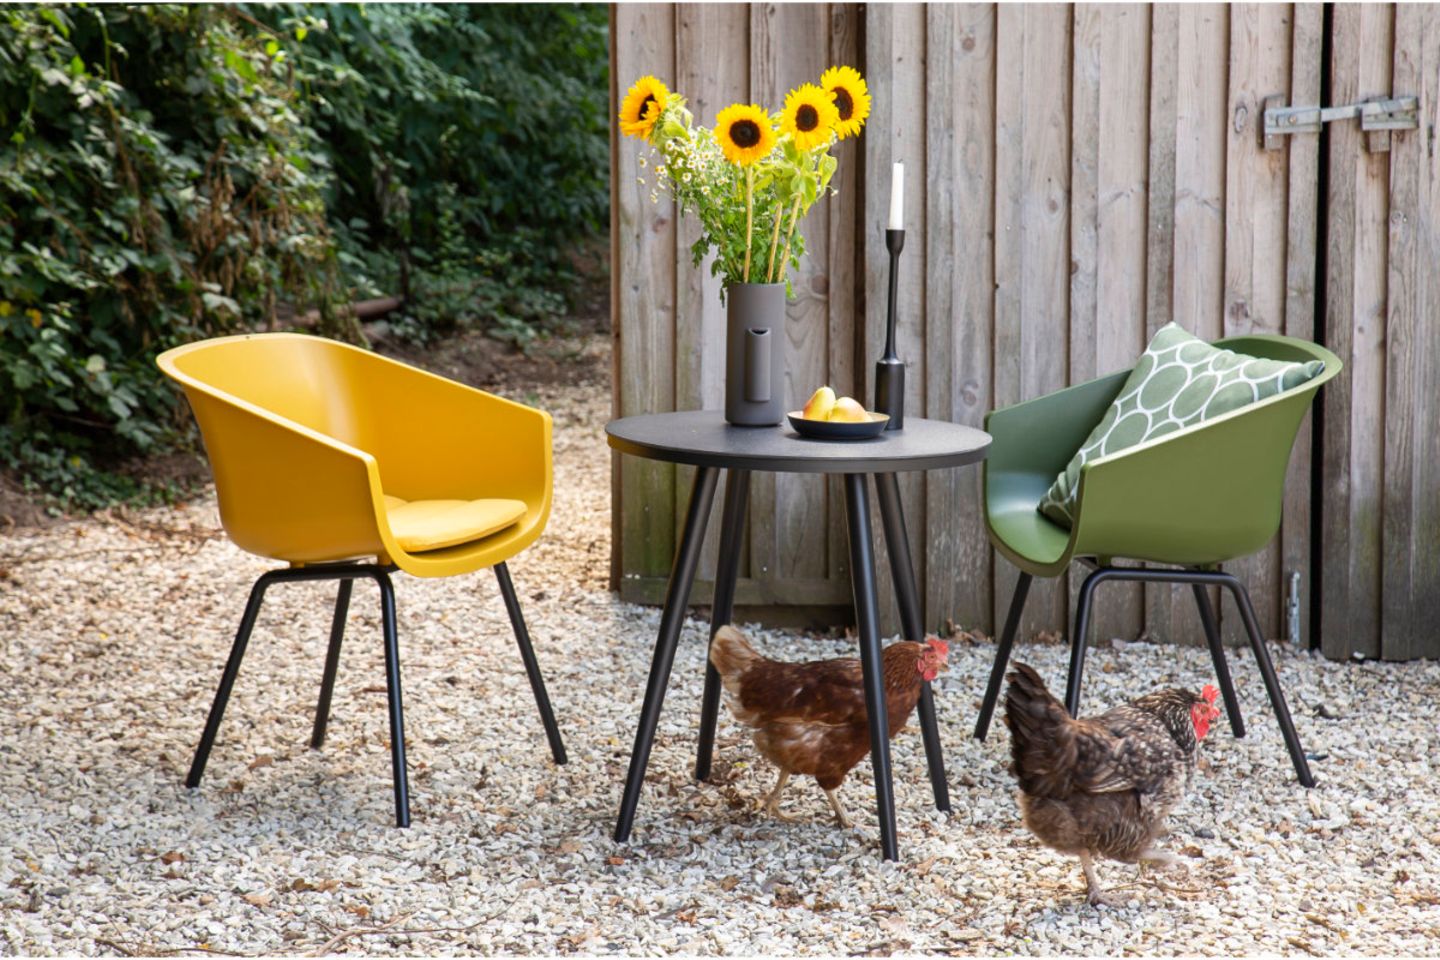 Schalenstühle in Gelb und Grün mit Bistrotisch, Hühner auf dem Boden